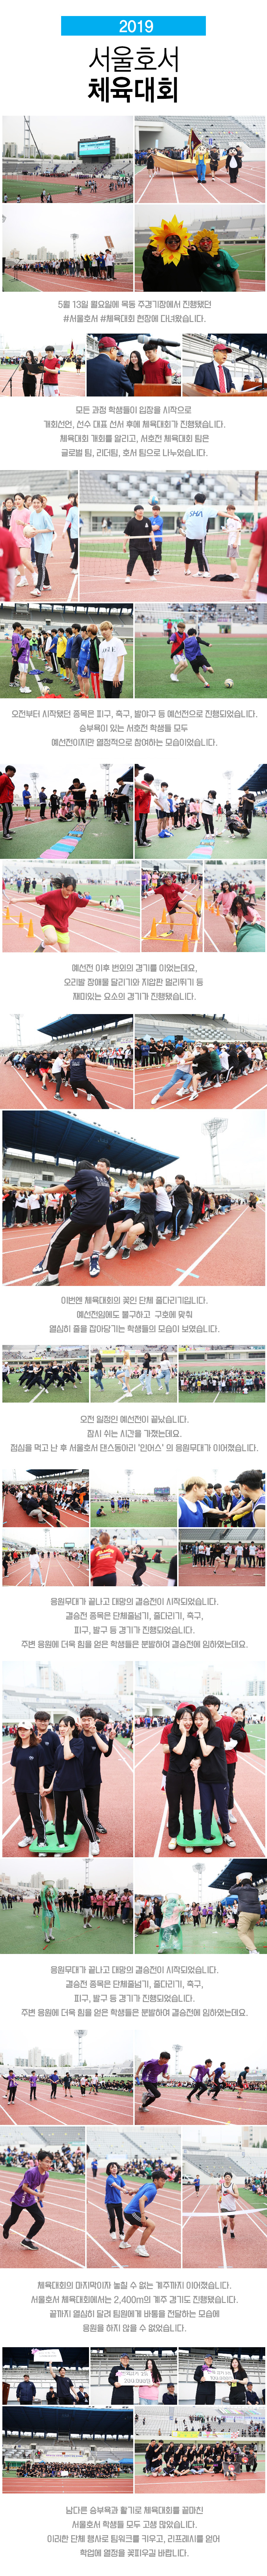 2019 서울호서 체육대회